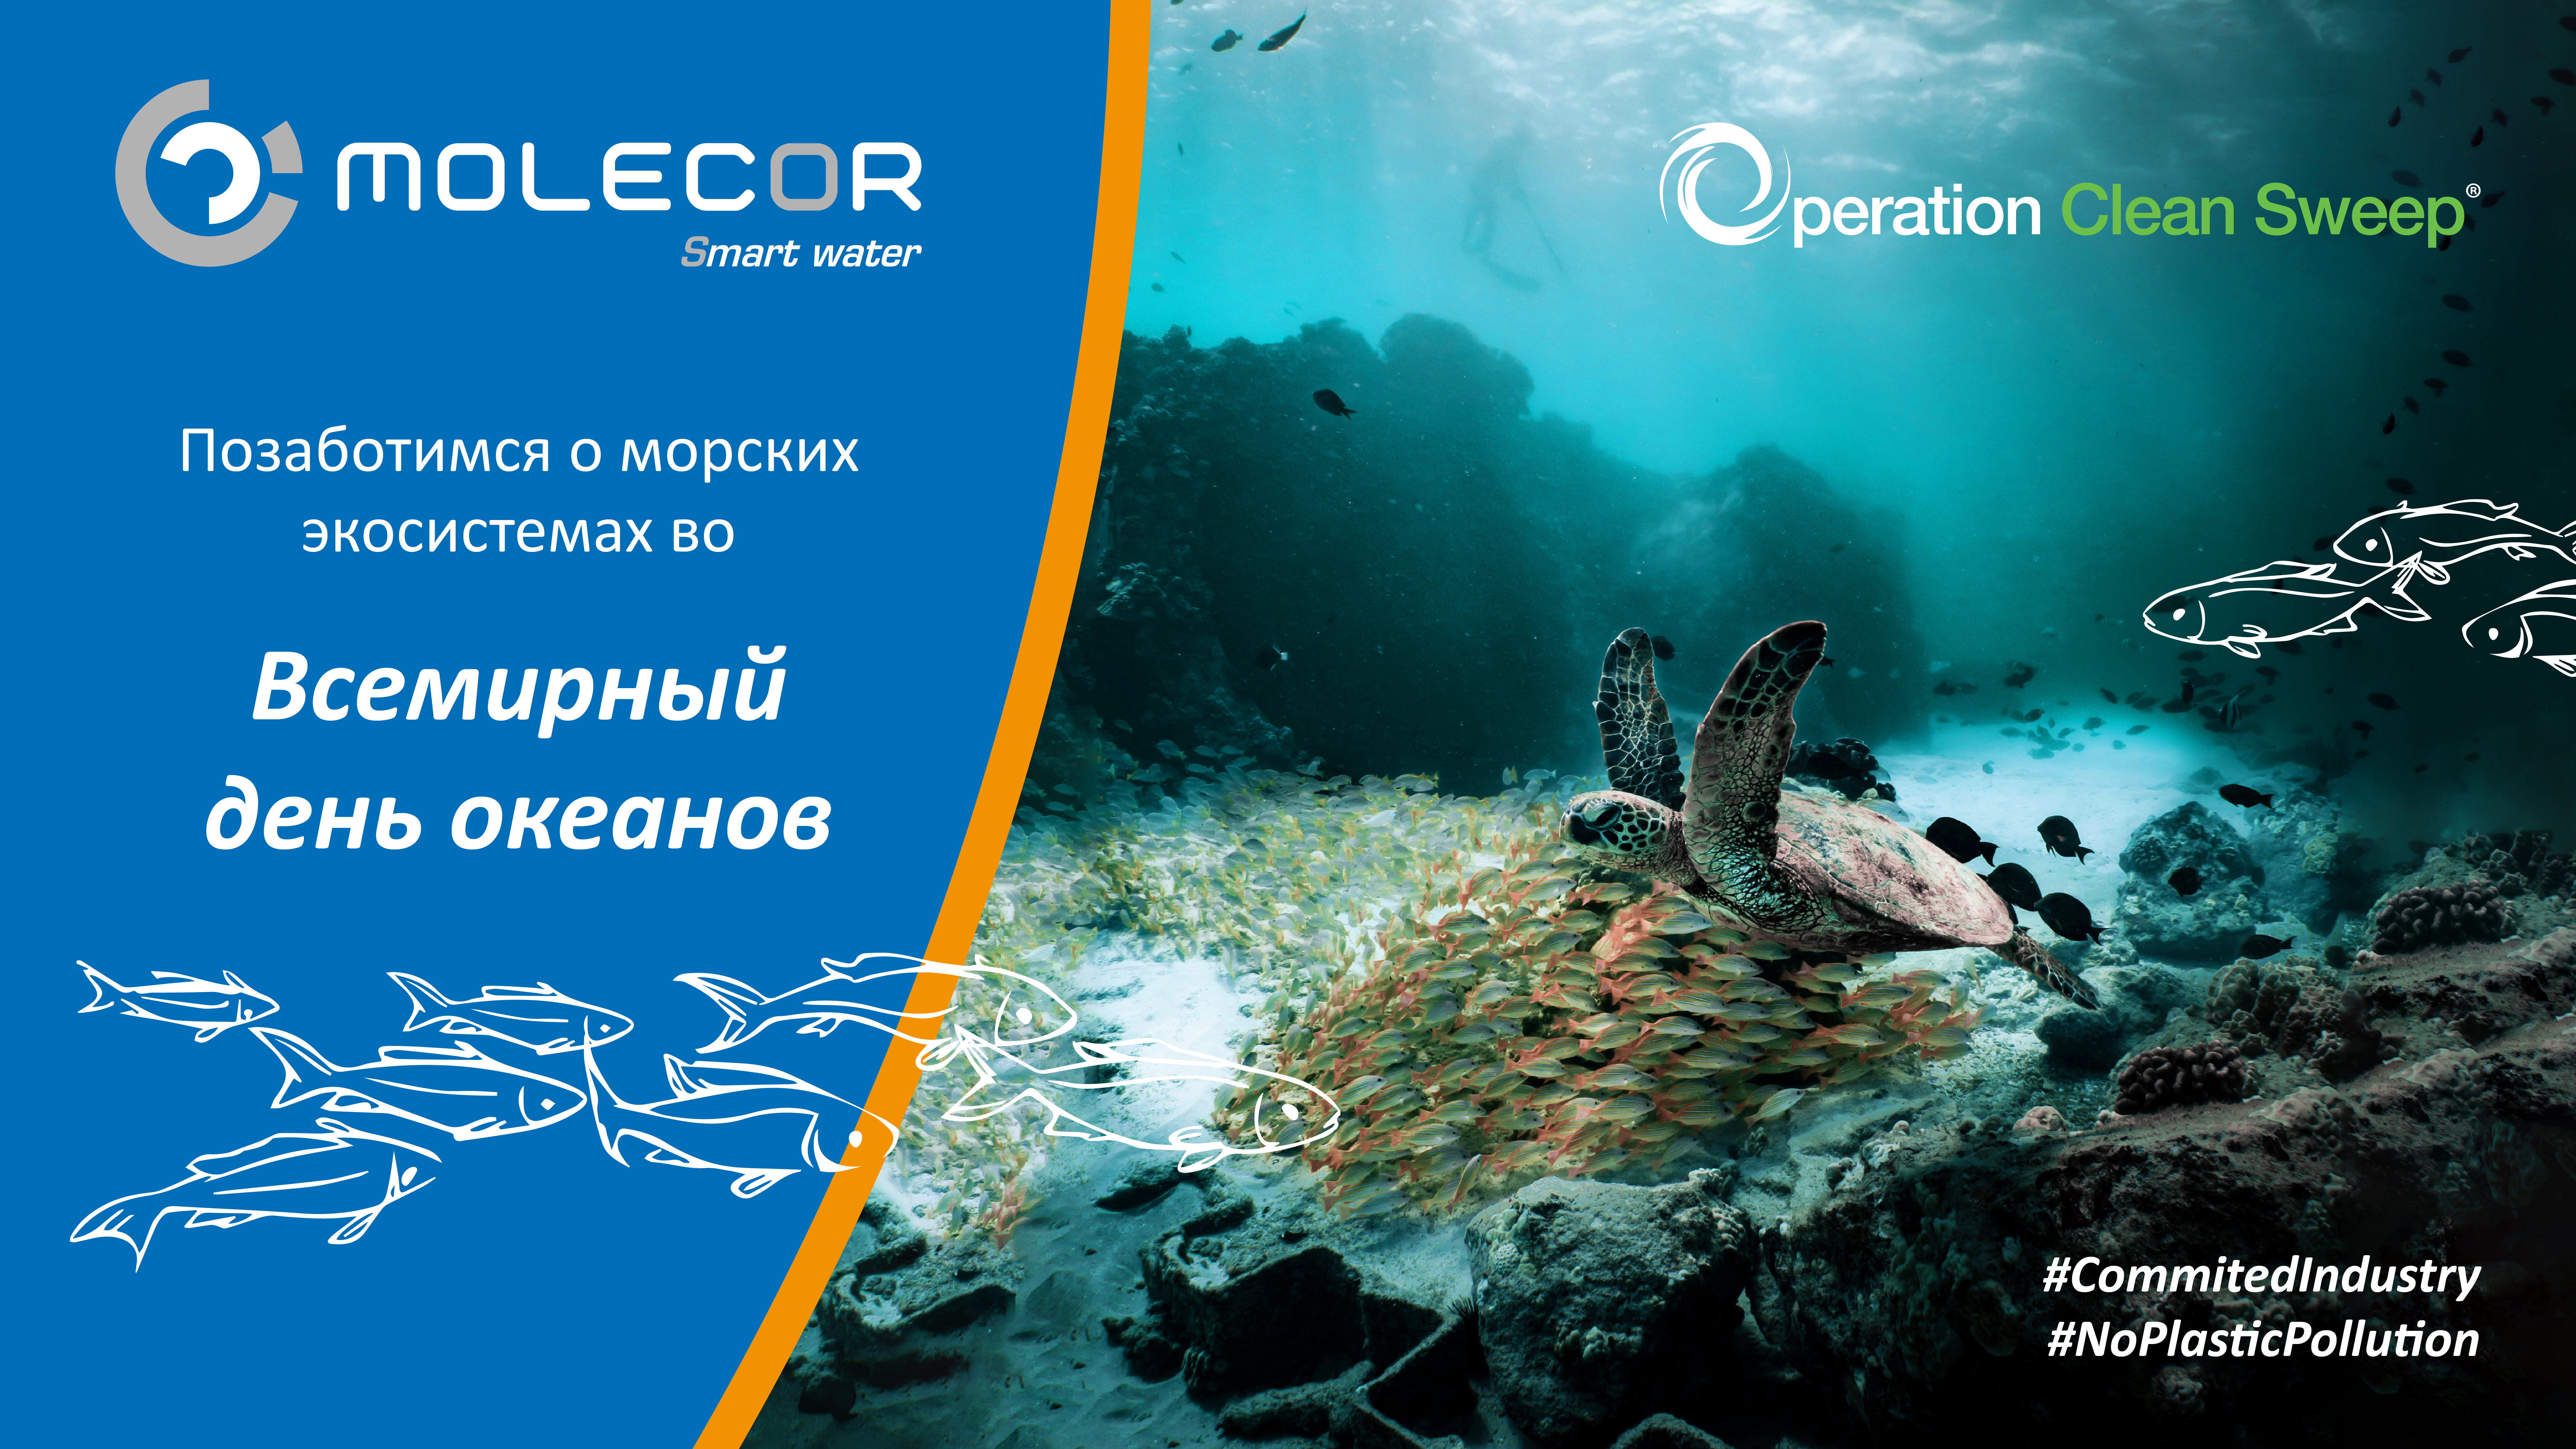 Компания Molecor присоединяется к заботе о морских экосистемах во «Всемирный день океанов» в рамках программы Operation Clean Sweep